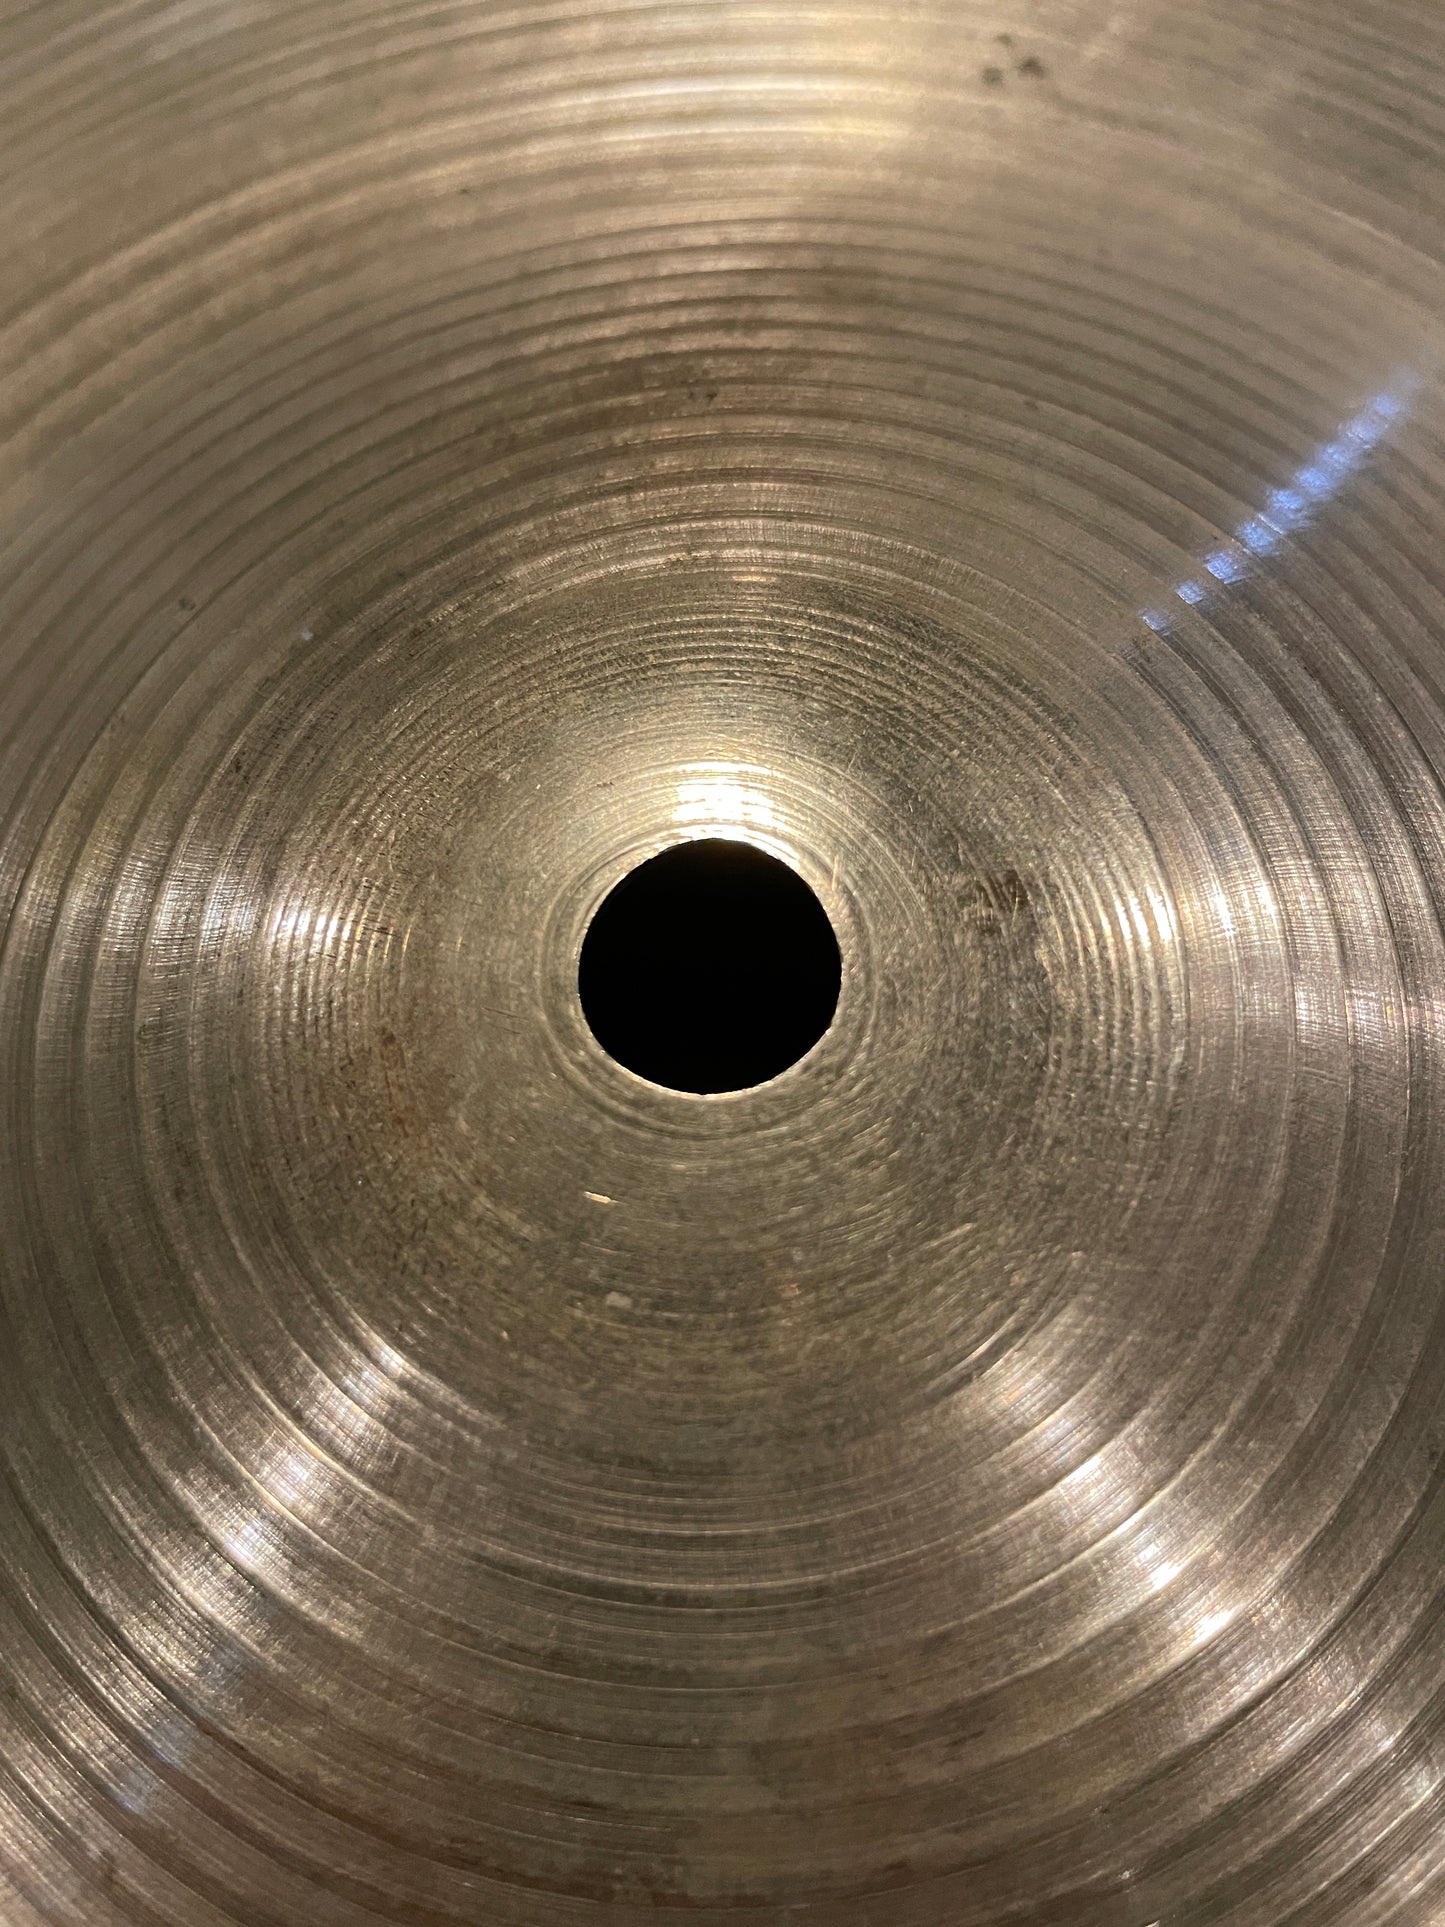 16" Zildjian A 1970s Crash / Bottom Hi-Hat Cymbal 1316g #175